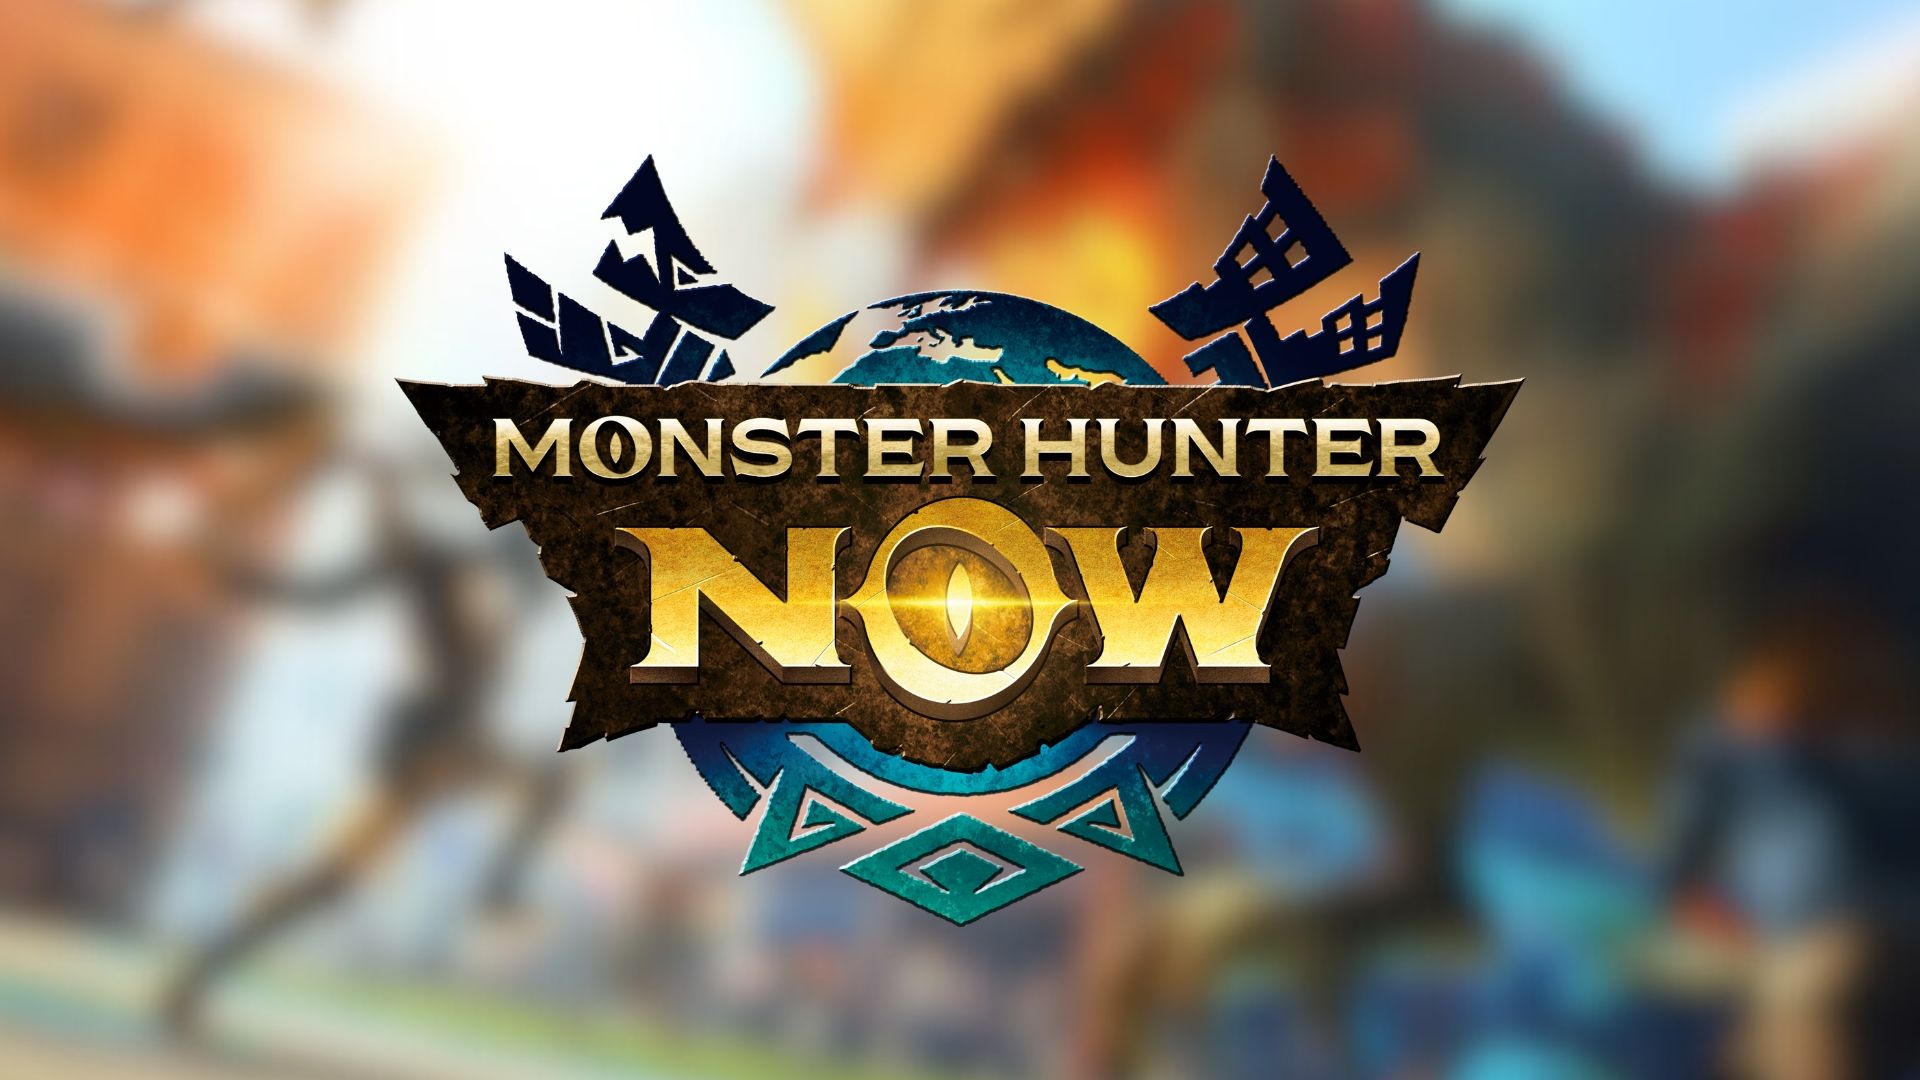 Monster Hunter Now key art and logo